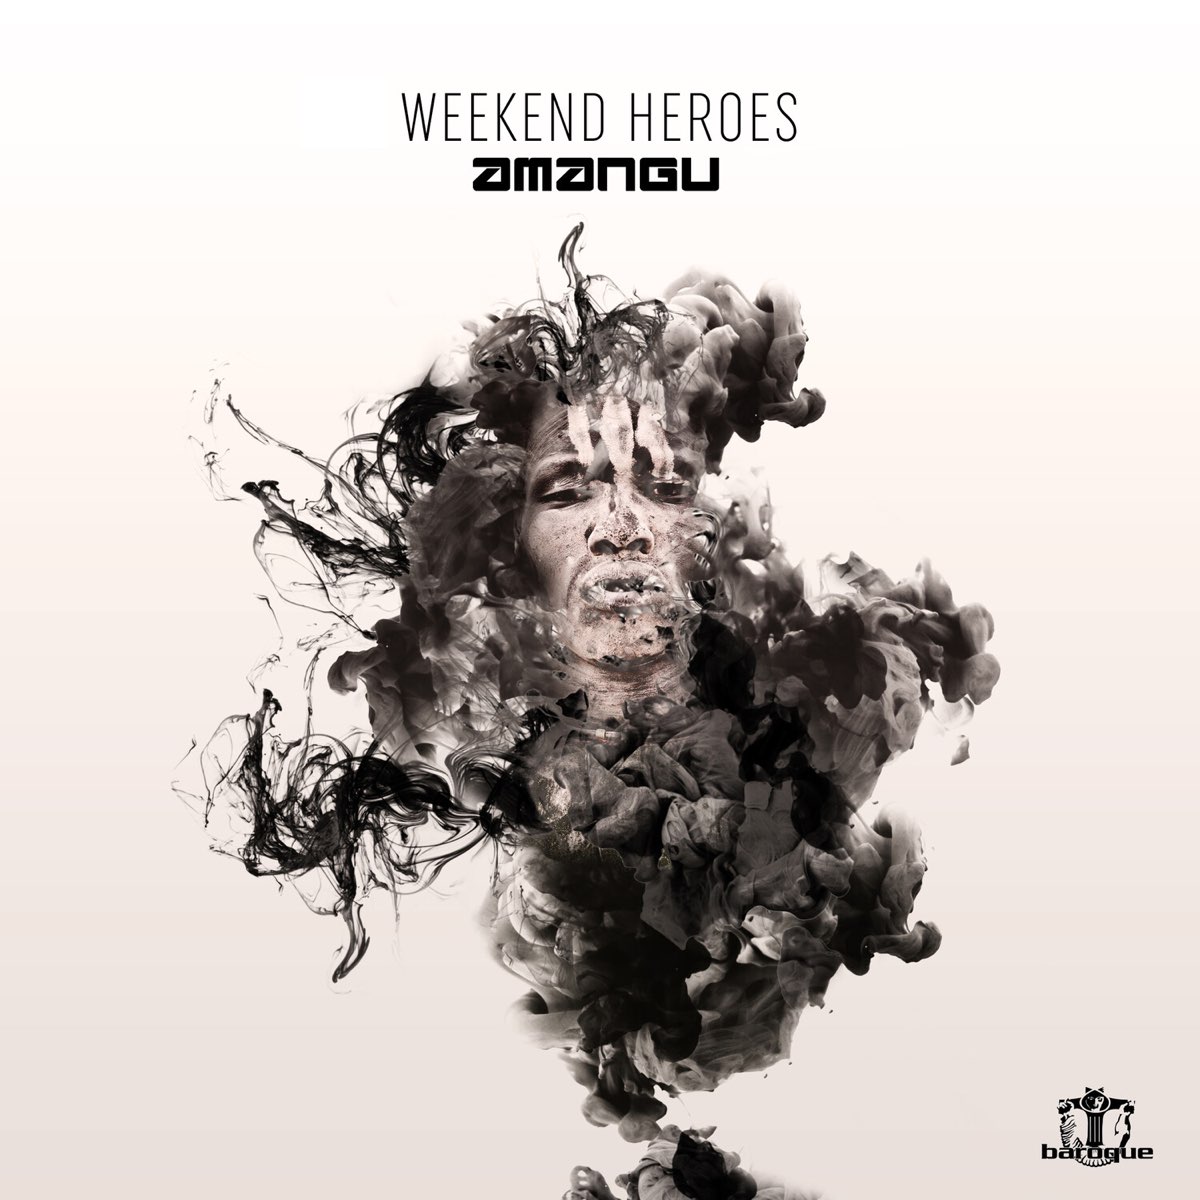 Weekend heroes. Modern_Heroes альбом. Обложки песен the weekend Heroes. Hero музыка.